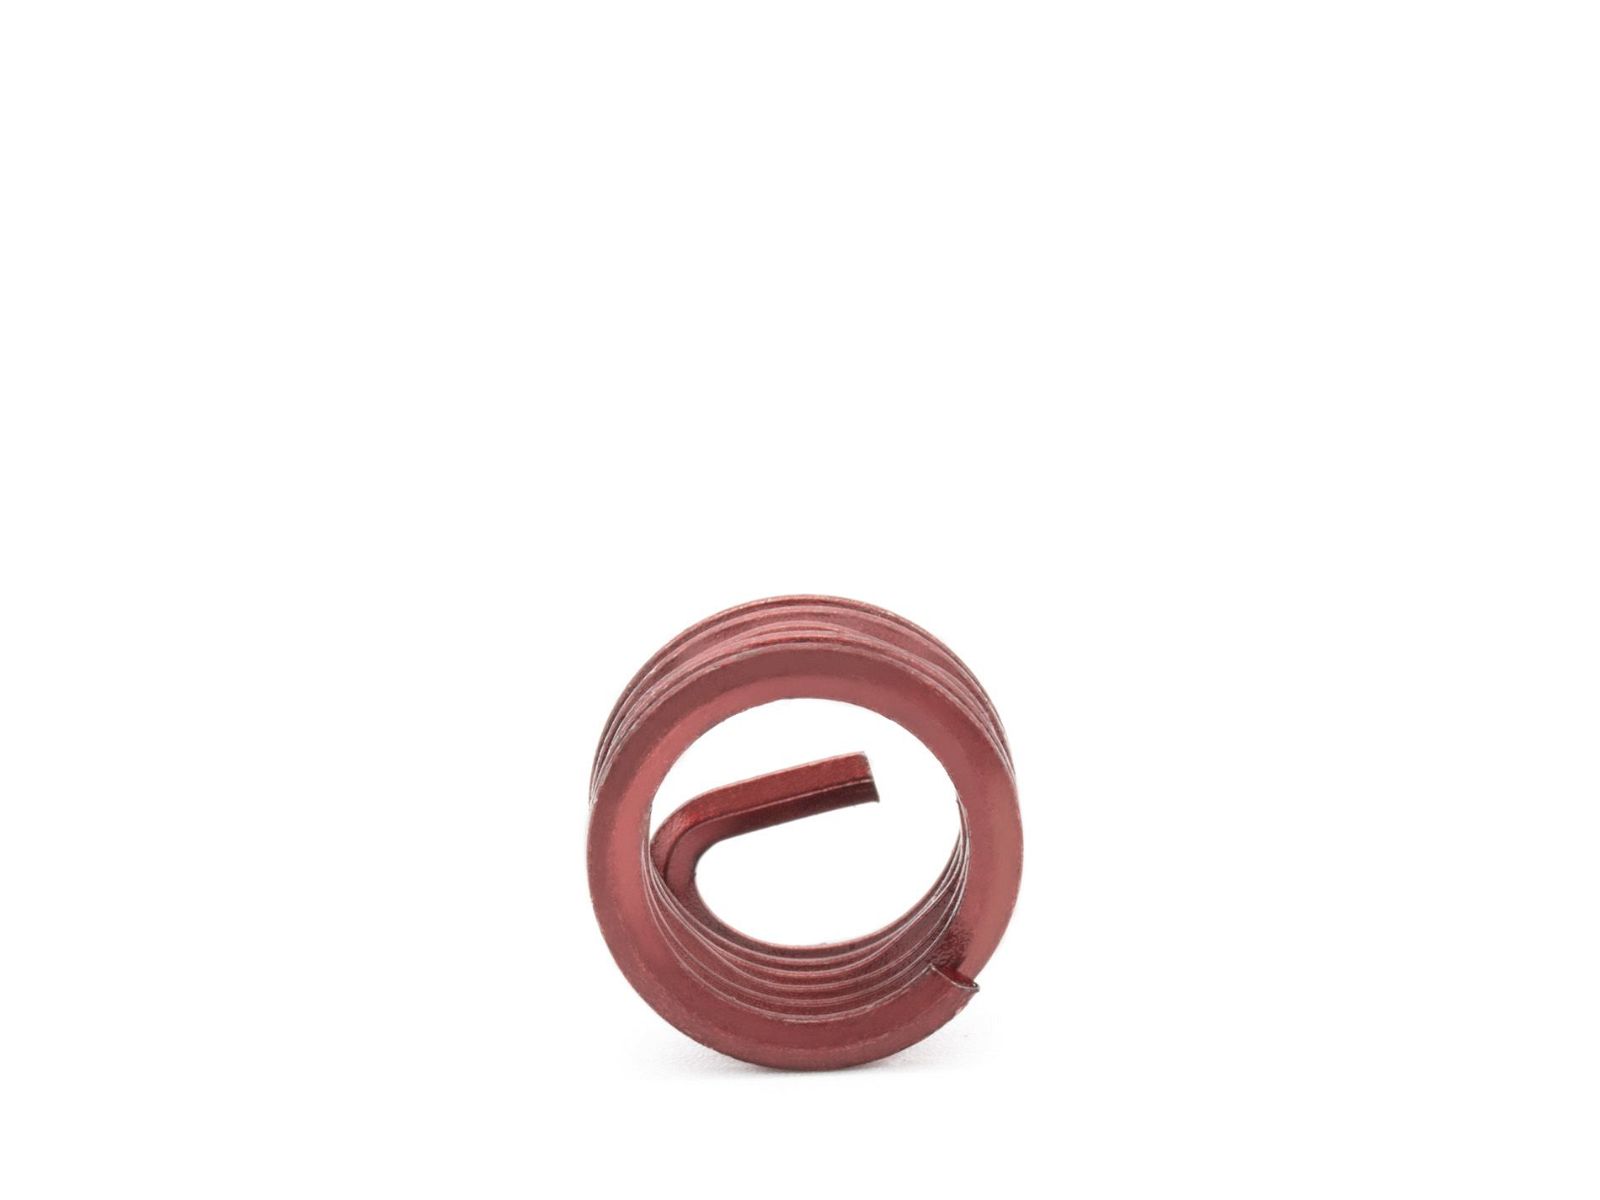 BaerCoil Wire Thread Inserts M 7 x 1.0 - 1.0 D (7 mm) - screw grip (screw locking) - 10 pcs.